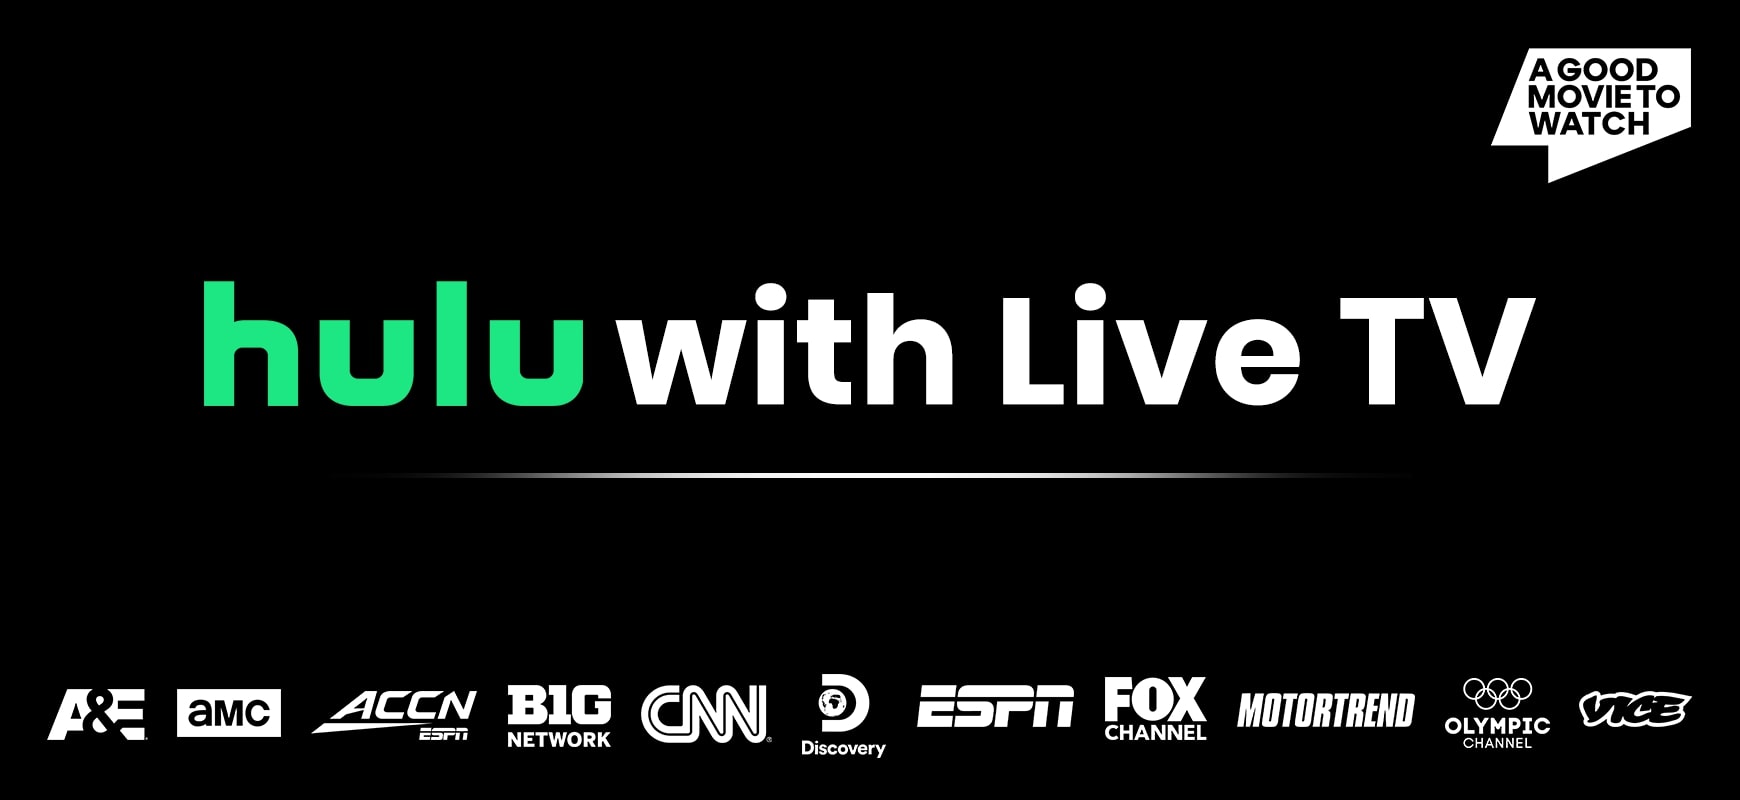 라이브 TV와 Hulu